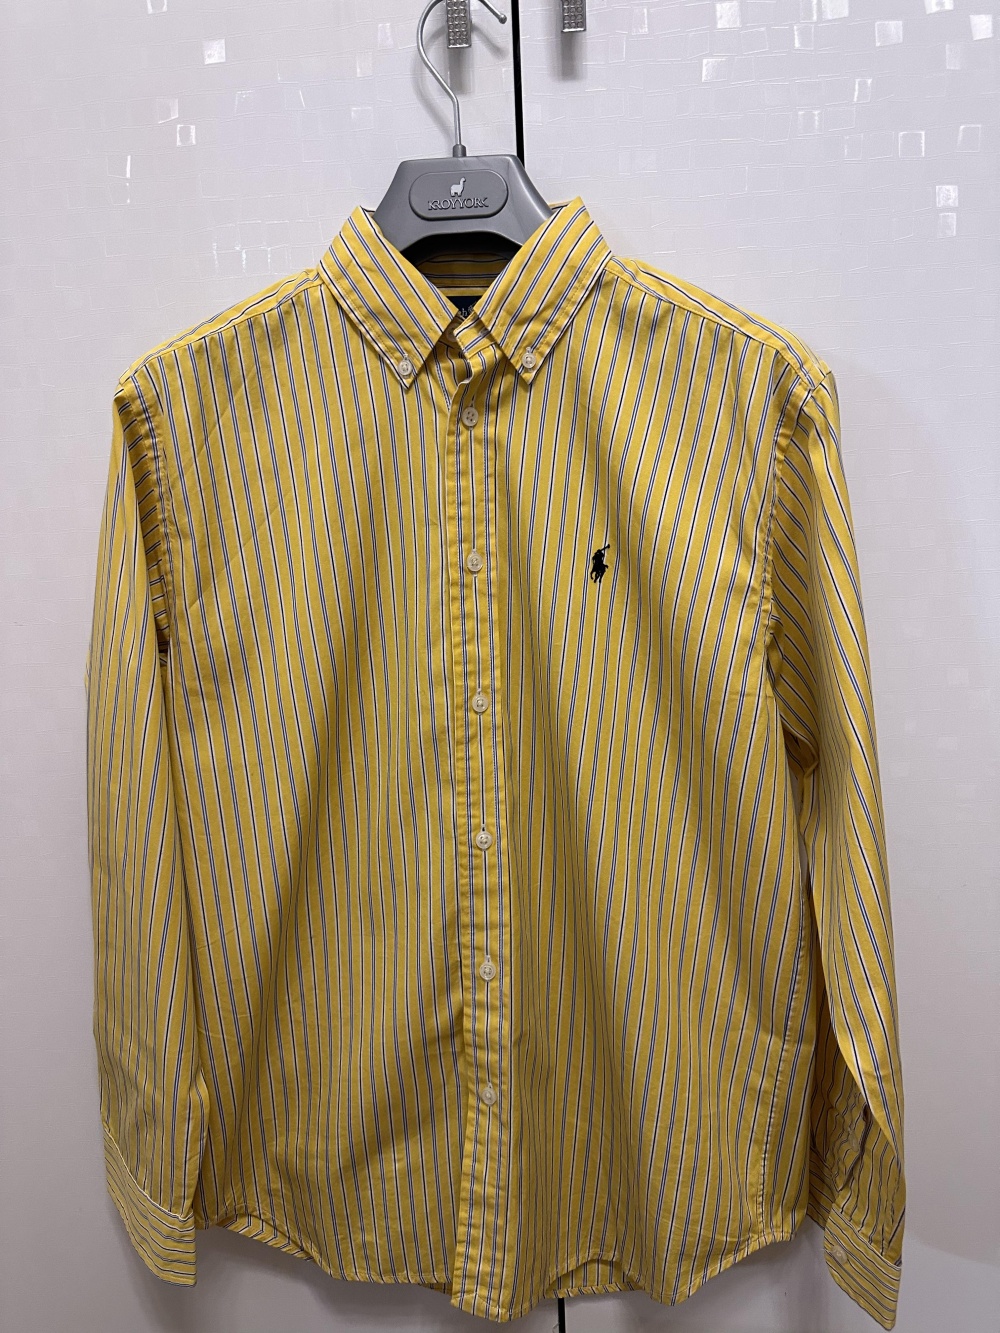 Рубашка Ralph Lauren, L 14-16